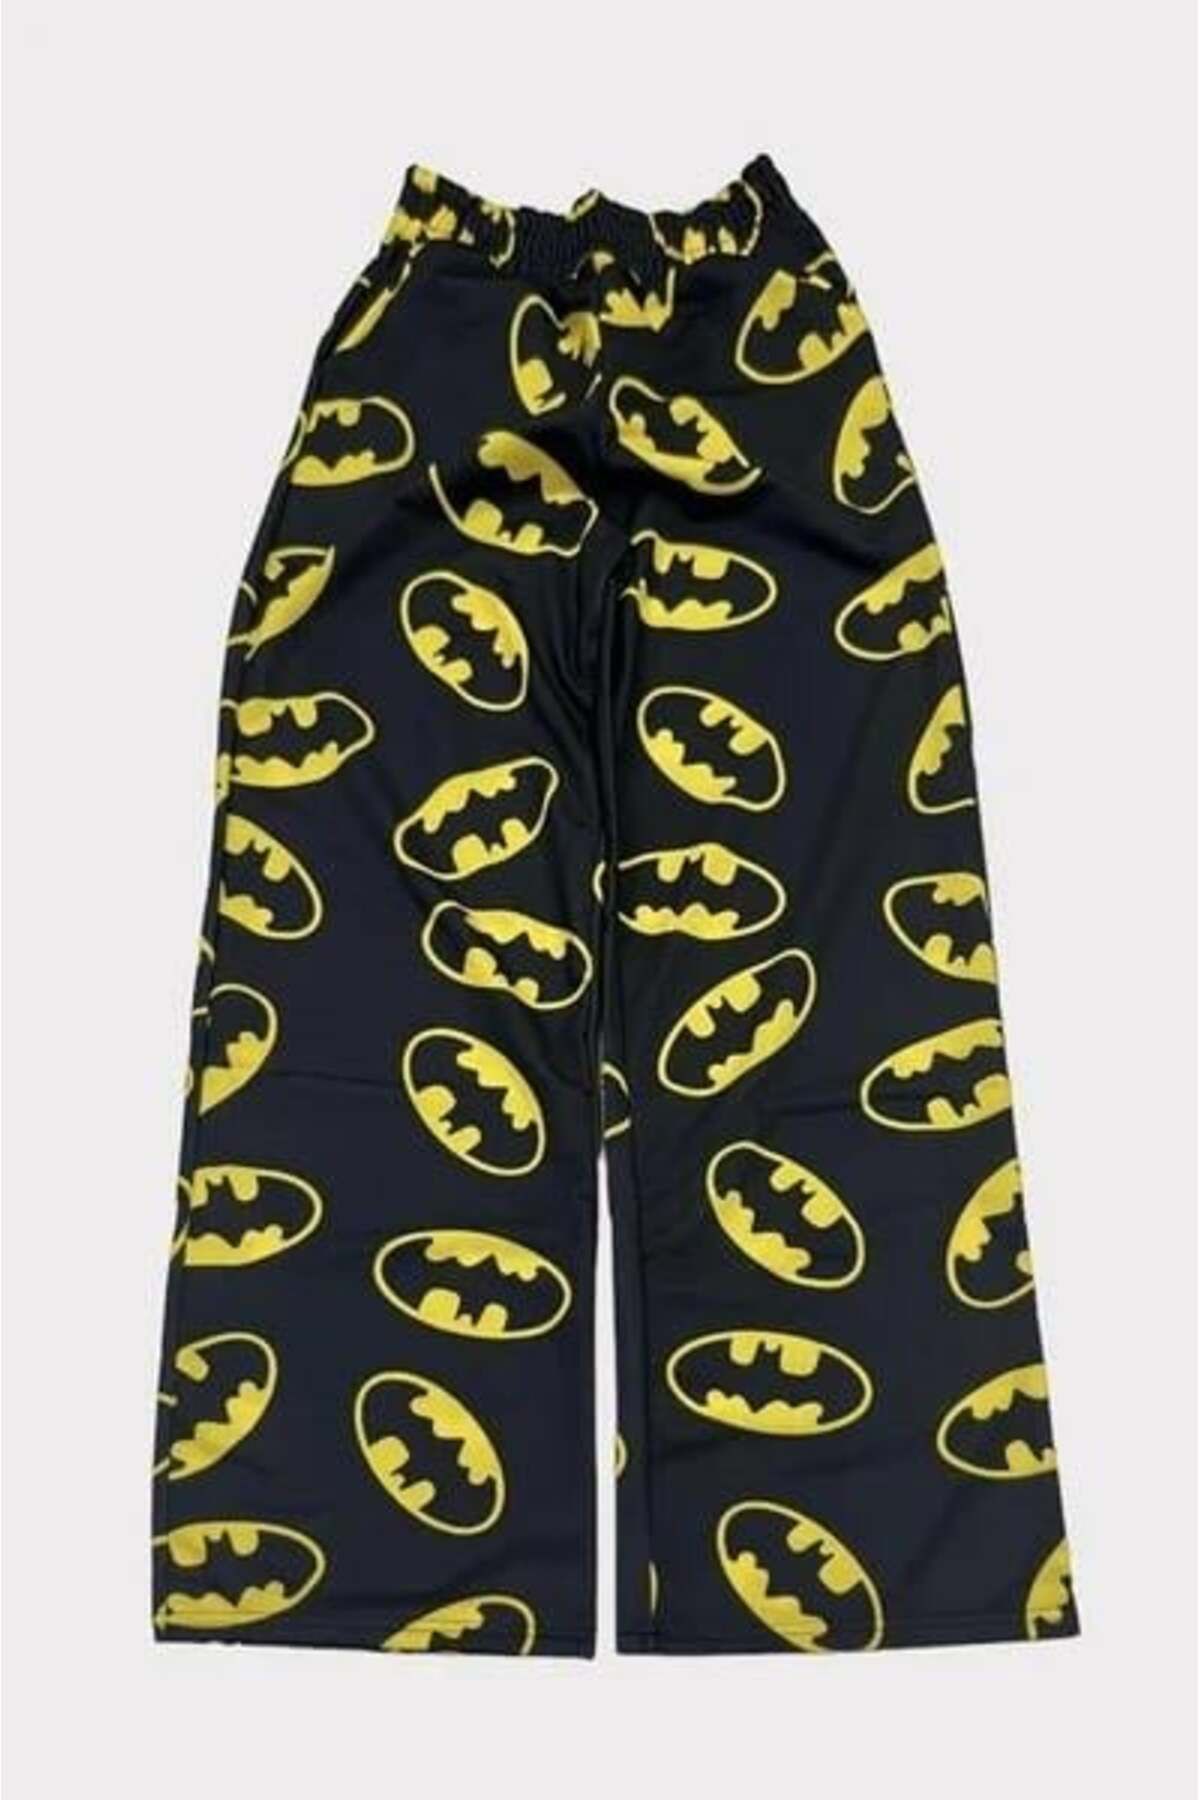 Touz Moda Batman Desen Eşofman Altı